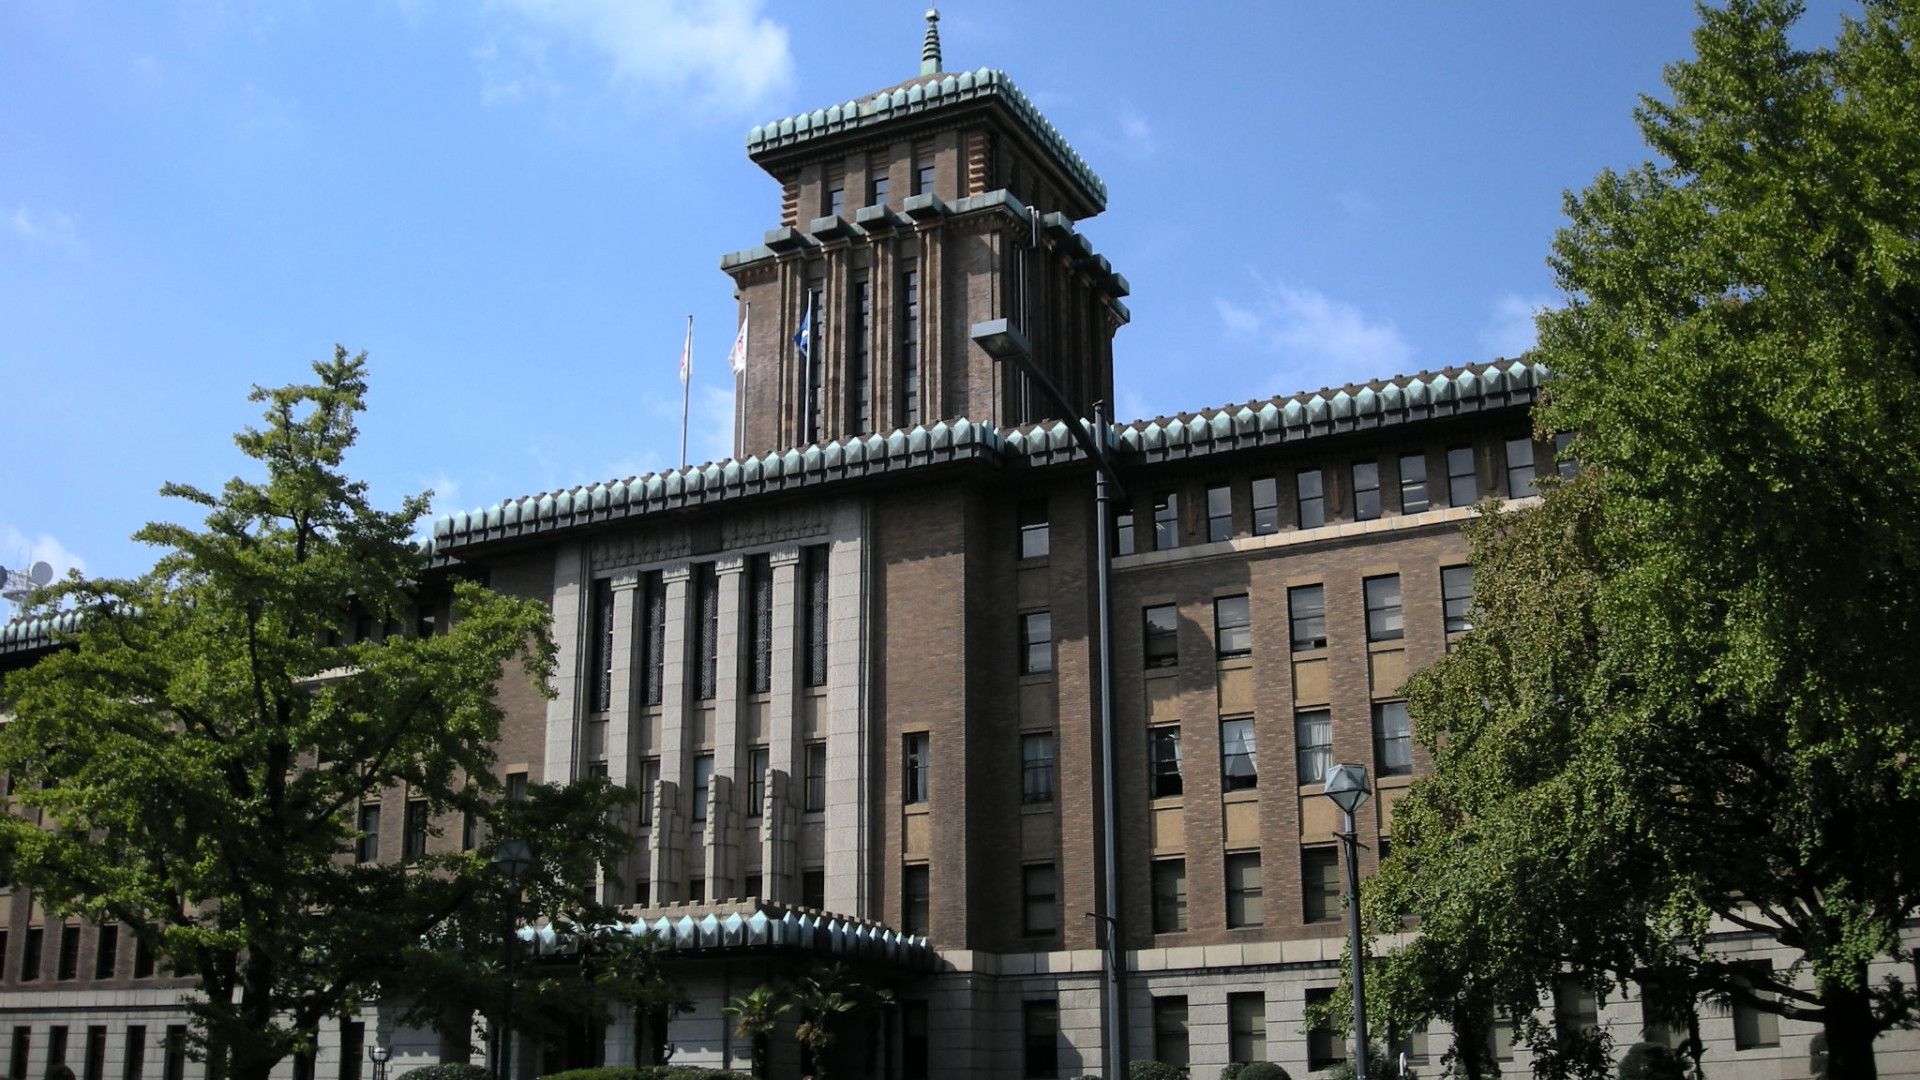 Büro der Präfekturregierung von Kanagawa (Königsturm)